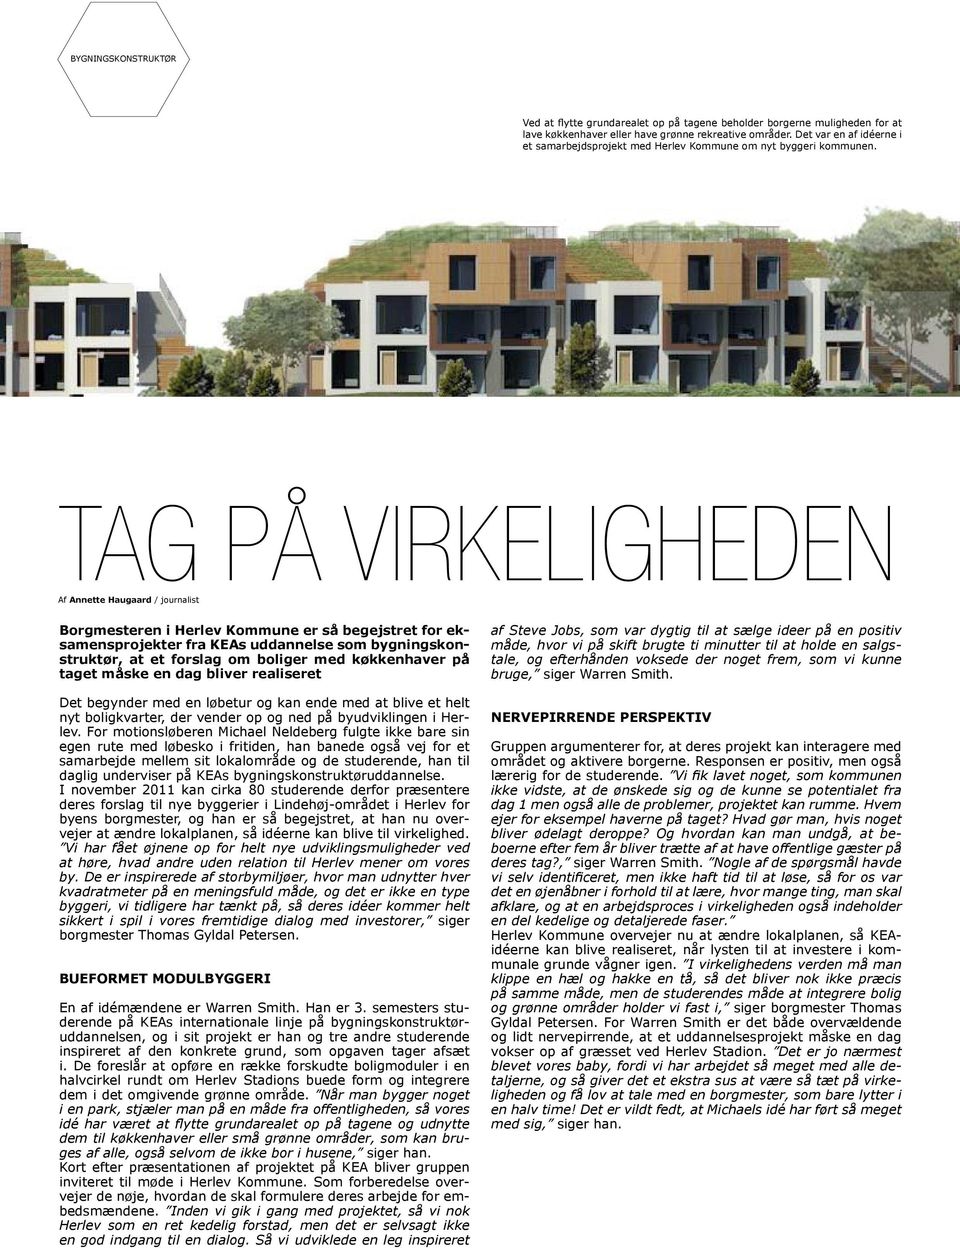 TAG PÅ VIRKELIGHEDEN Af Annette Haugaard / journalist Borgmesteren i Herlev Kommune er så begejstret for eksamensprojekter fra KEAs uddannelse som bygningskonstruktør, at et forslag om boliger med